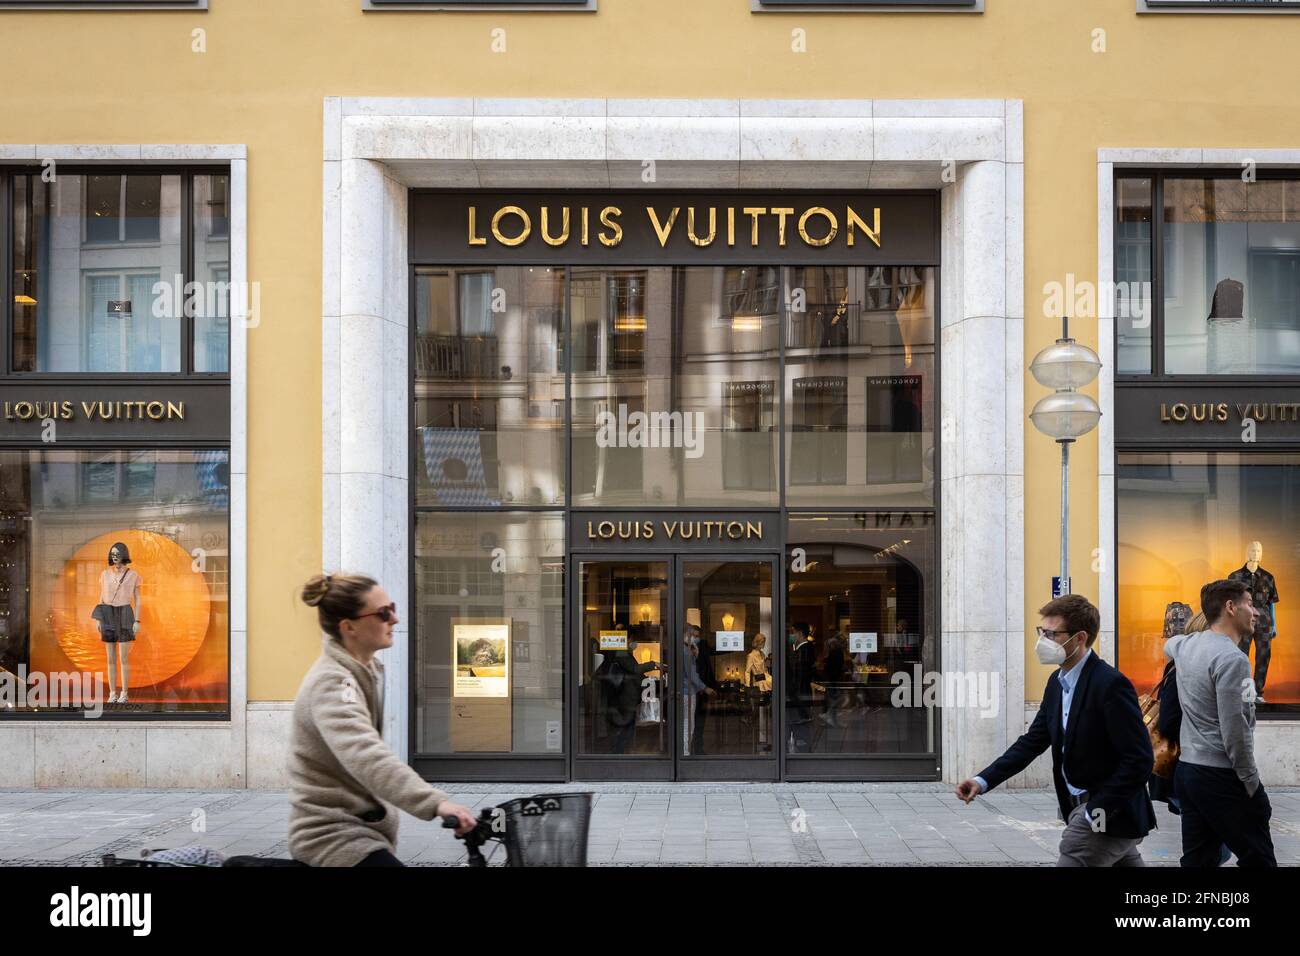 Schild des Louis Vuitton Ladens im Stadtzentrum von München Stockfotografie  - Alamy